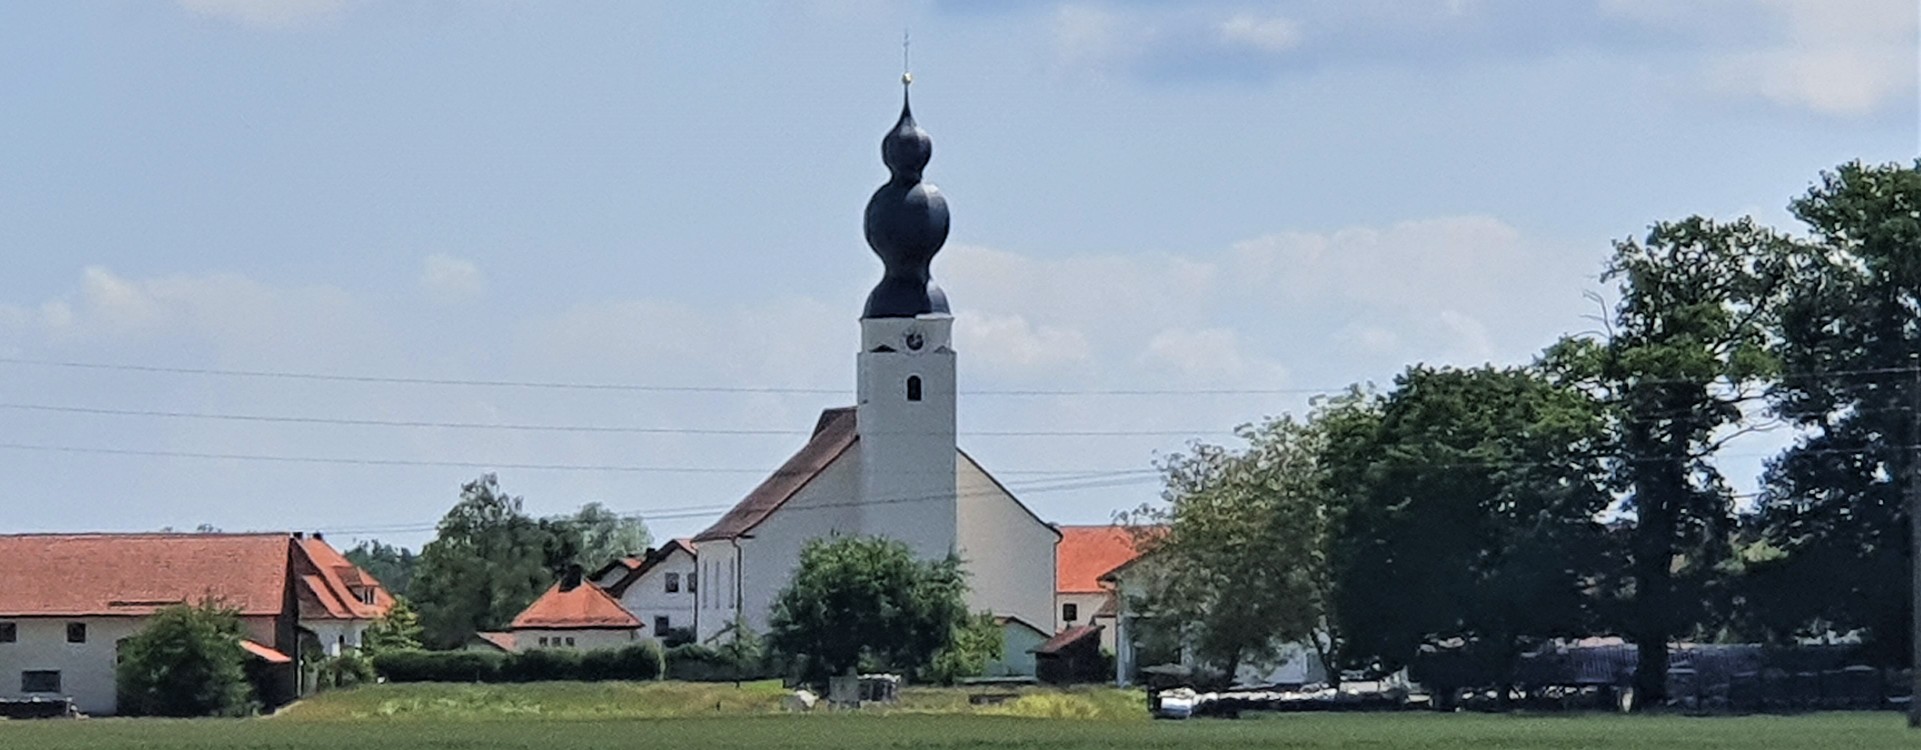 Kirche in Niedergottsau von der Ferne